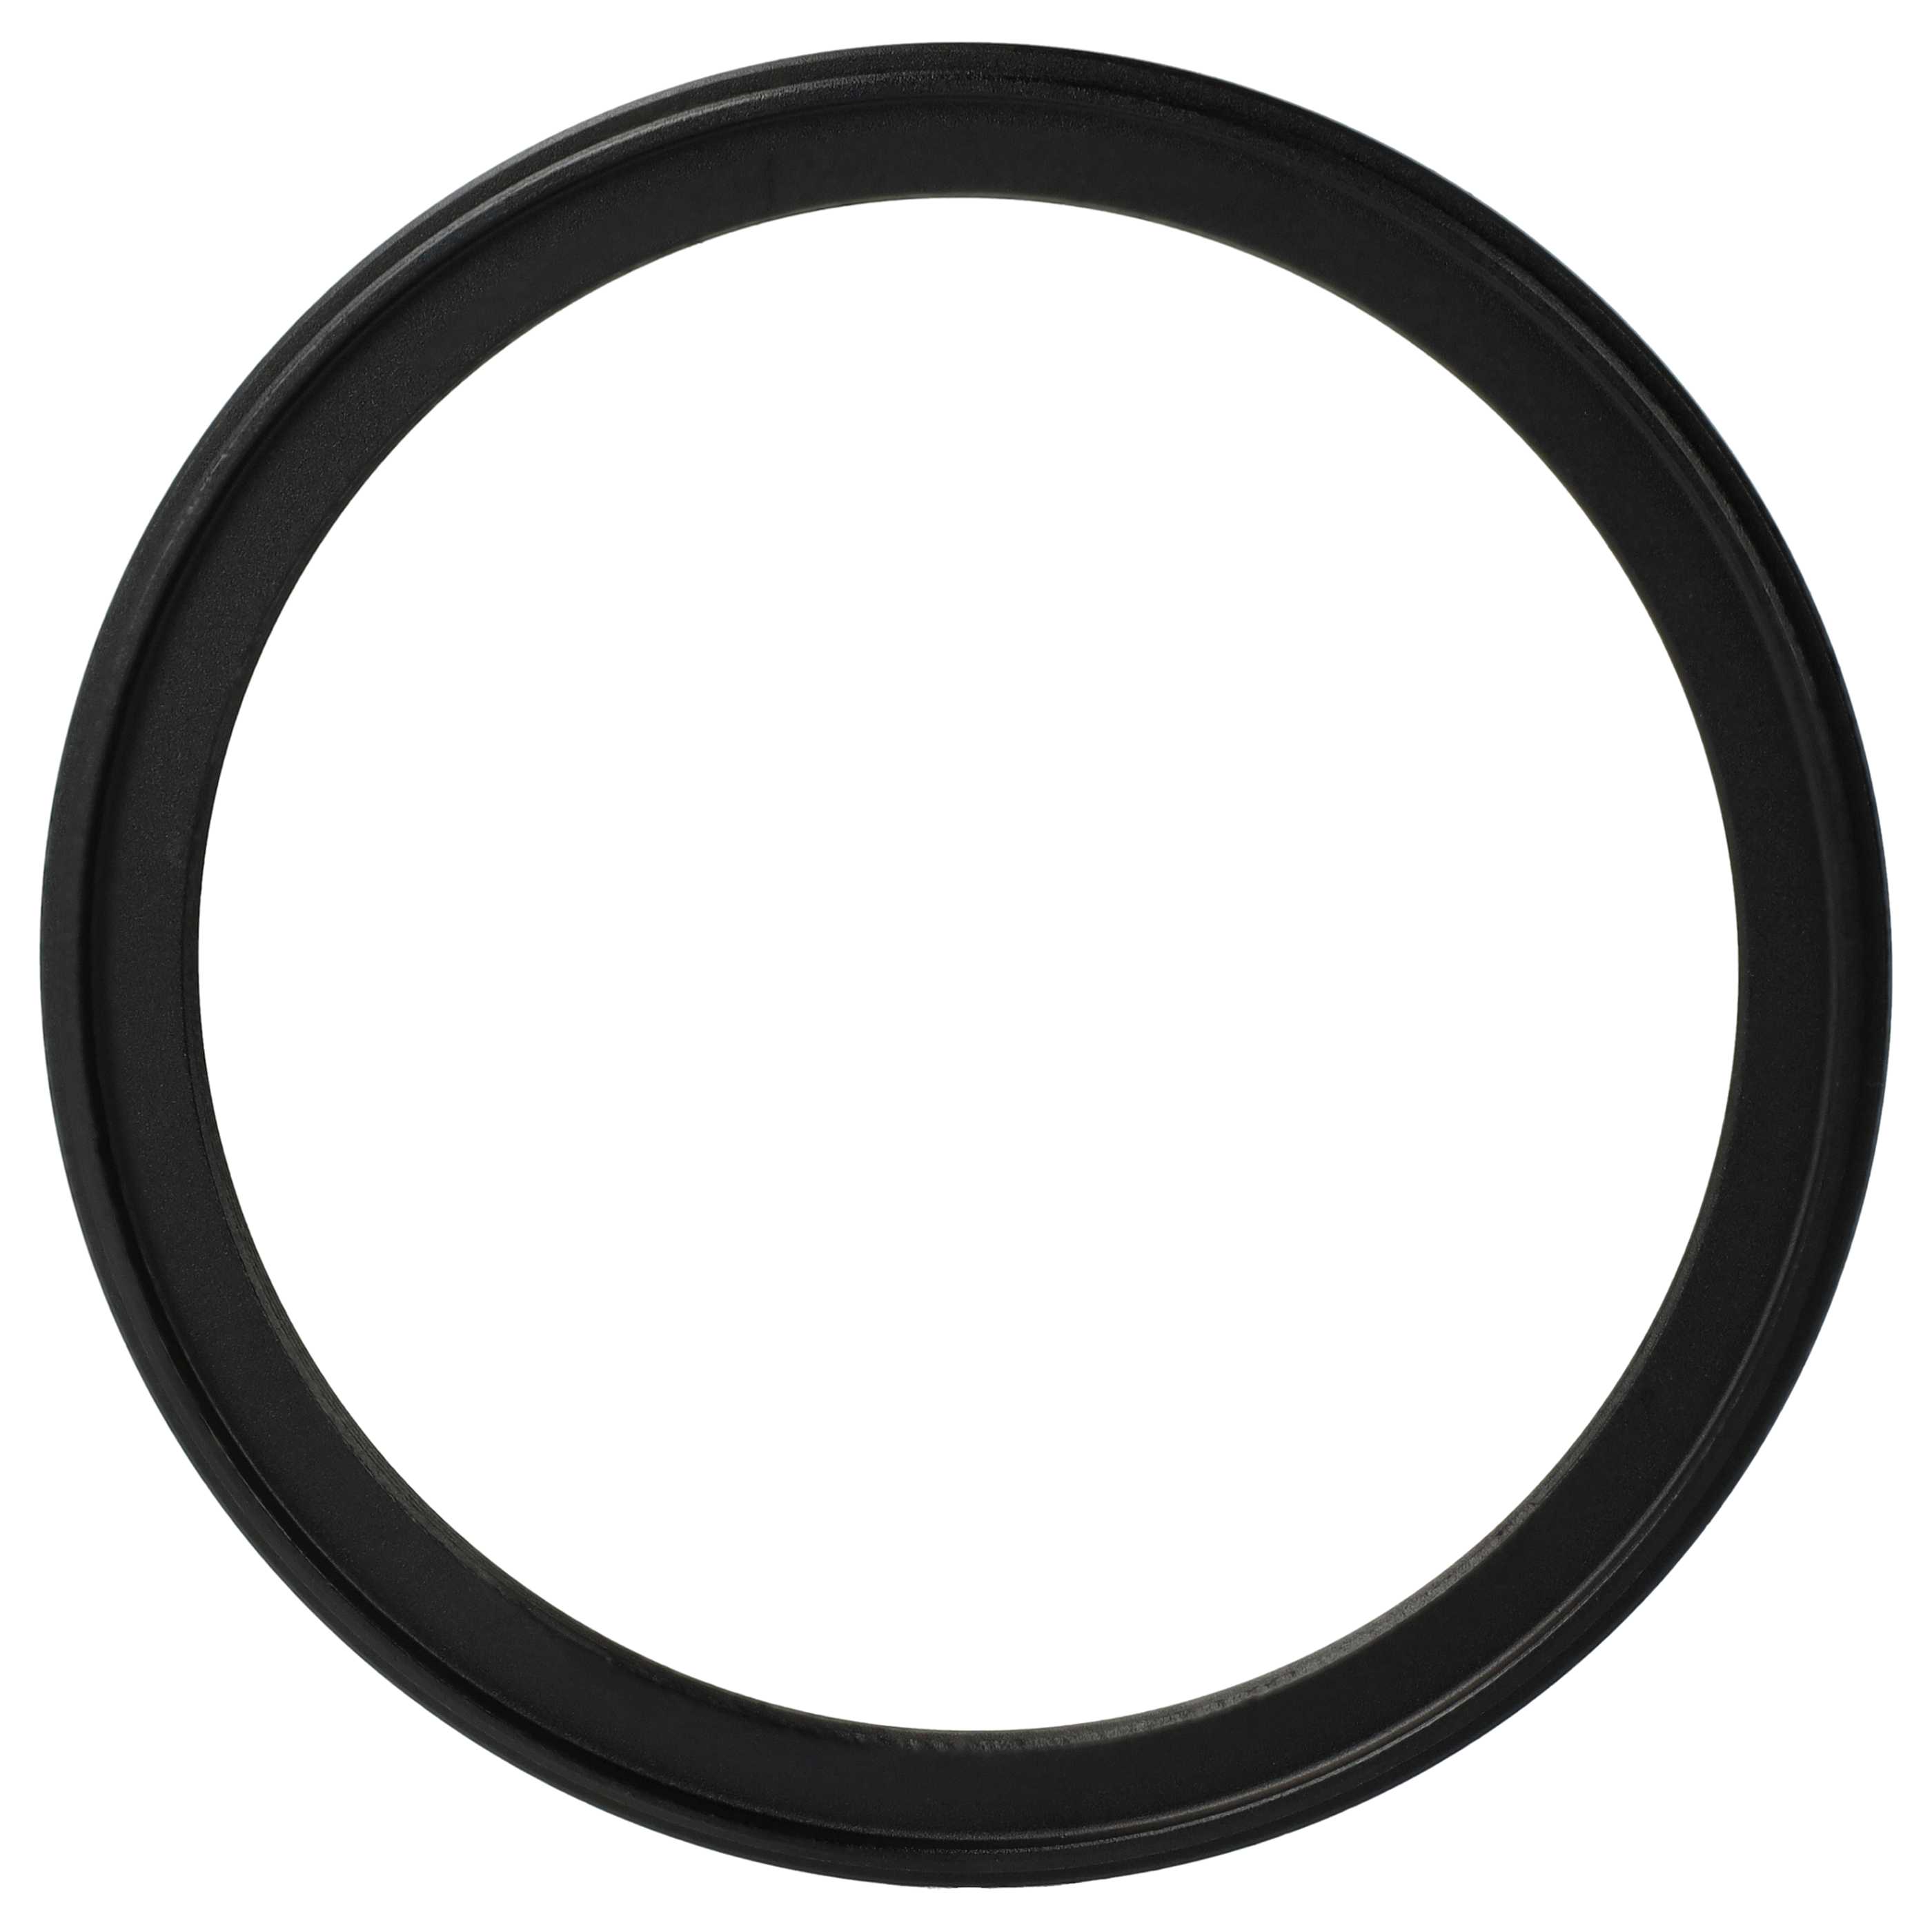 Redukcja filtrowa adapter Step-Down 95 mm - 82 mm pasująca do obiektywu - metal, czarny